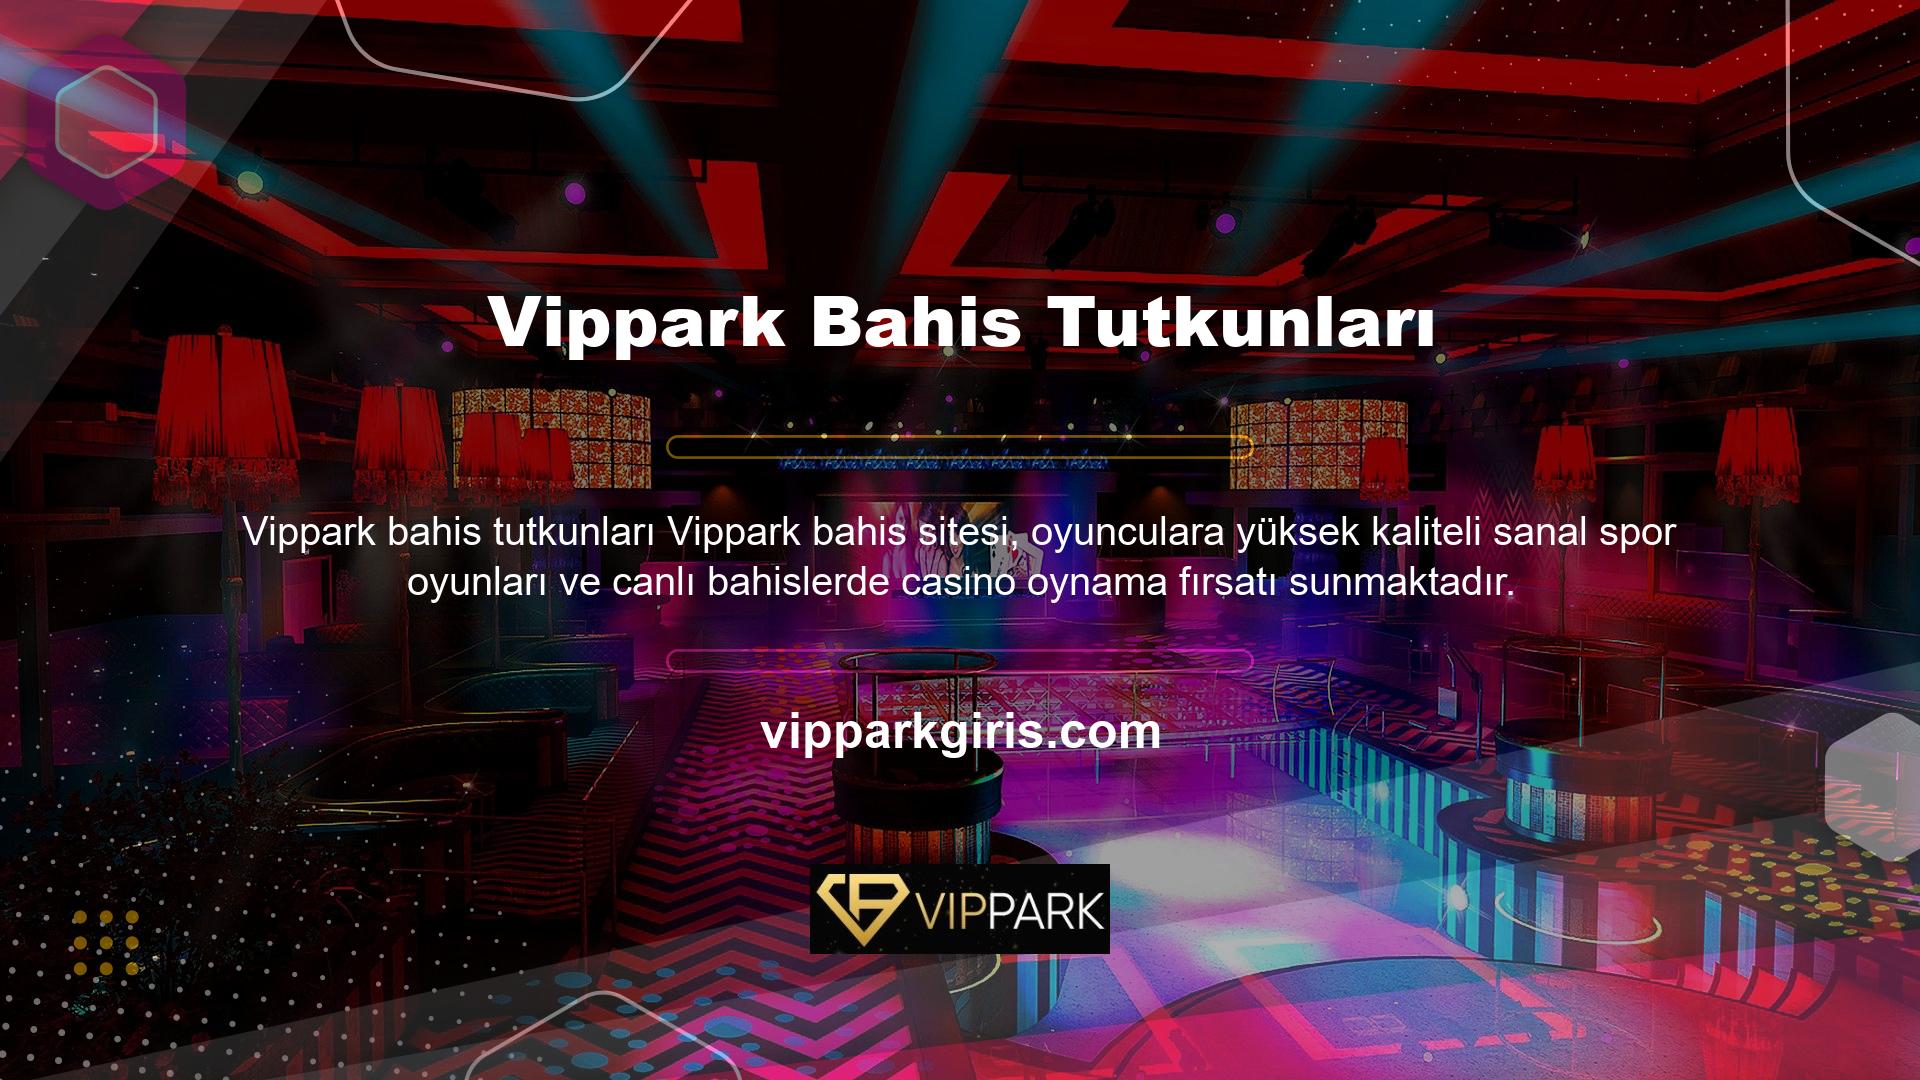 Vippark bahis tutkunu web sitesinin online bahis bölümünde taraftarlar diledikleri zaman yüksek oranlarla bahis oynayabilir ve canlı bahis kuponları alabilirler